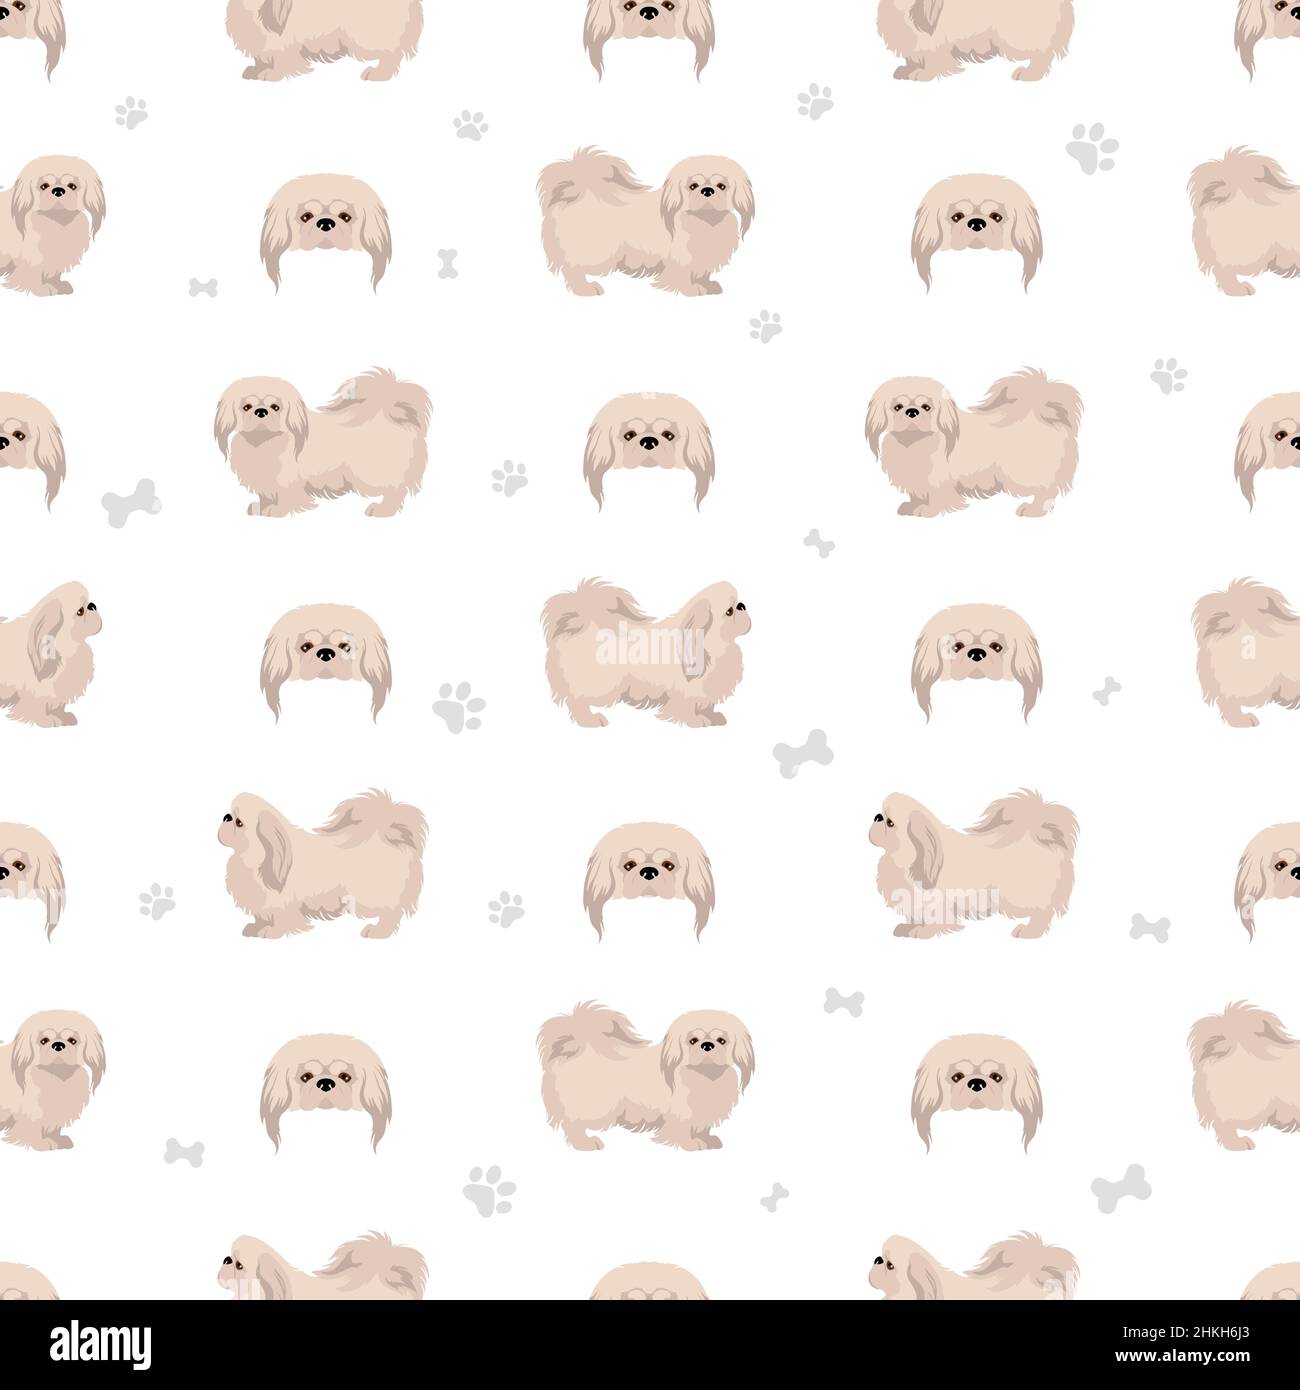 Pekingese Hund nahtlose Muster. Verschiedene Posen, Fellfarben eingestellt. Vektorgrafik Stock Vektor